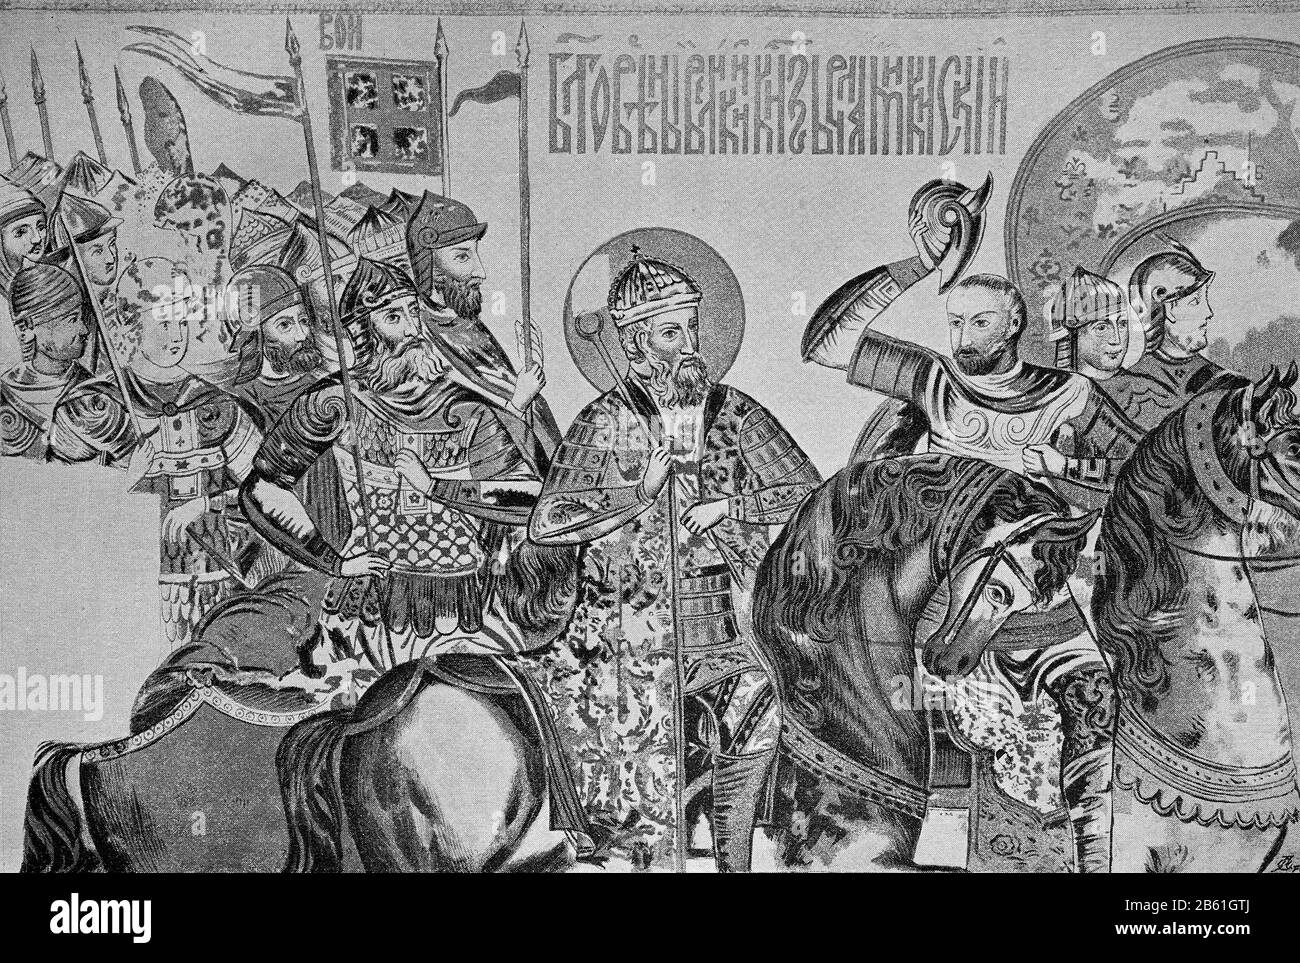 Großfürst Wladimir Monomach von Kiew, Darstellung auf einer alten Kirchenfahne, Wladimir II. Vsewolodovich, genannt Monomach, * 1053 † 19. Mai 1125, war Fürst von Smolensk, Perejaslav, Tschernigow und von 1113 bis 1125 Großfürst von Kiew/Großfürst Wladimir Monomach von Kiew, Darstellung auf einer Fahne, Kirchenkasse Wladimir II Wsewolodowitsch, genannt Monomach ,* 1053 † 19. Mai 1125, Kriegsfürst von Smolensk, Perejaslaw, Tschernigow und von 1113 bis 1125 Großfürst von Kiew, historisch, digital verbesserte Wiedergabe eines Originals aus dem 19. Jahrhundert / Digitale Reproduktion einer Originalvorlage a Stockfoto